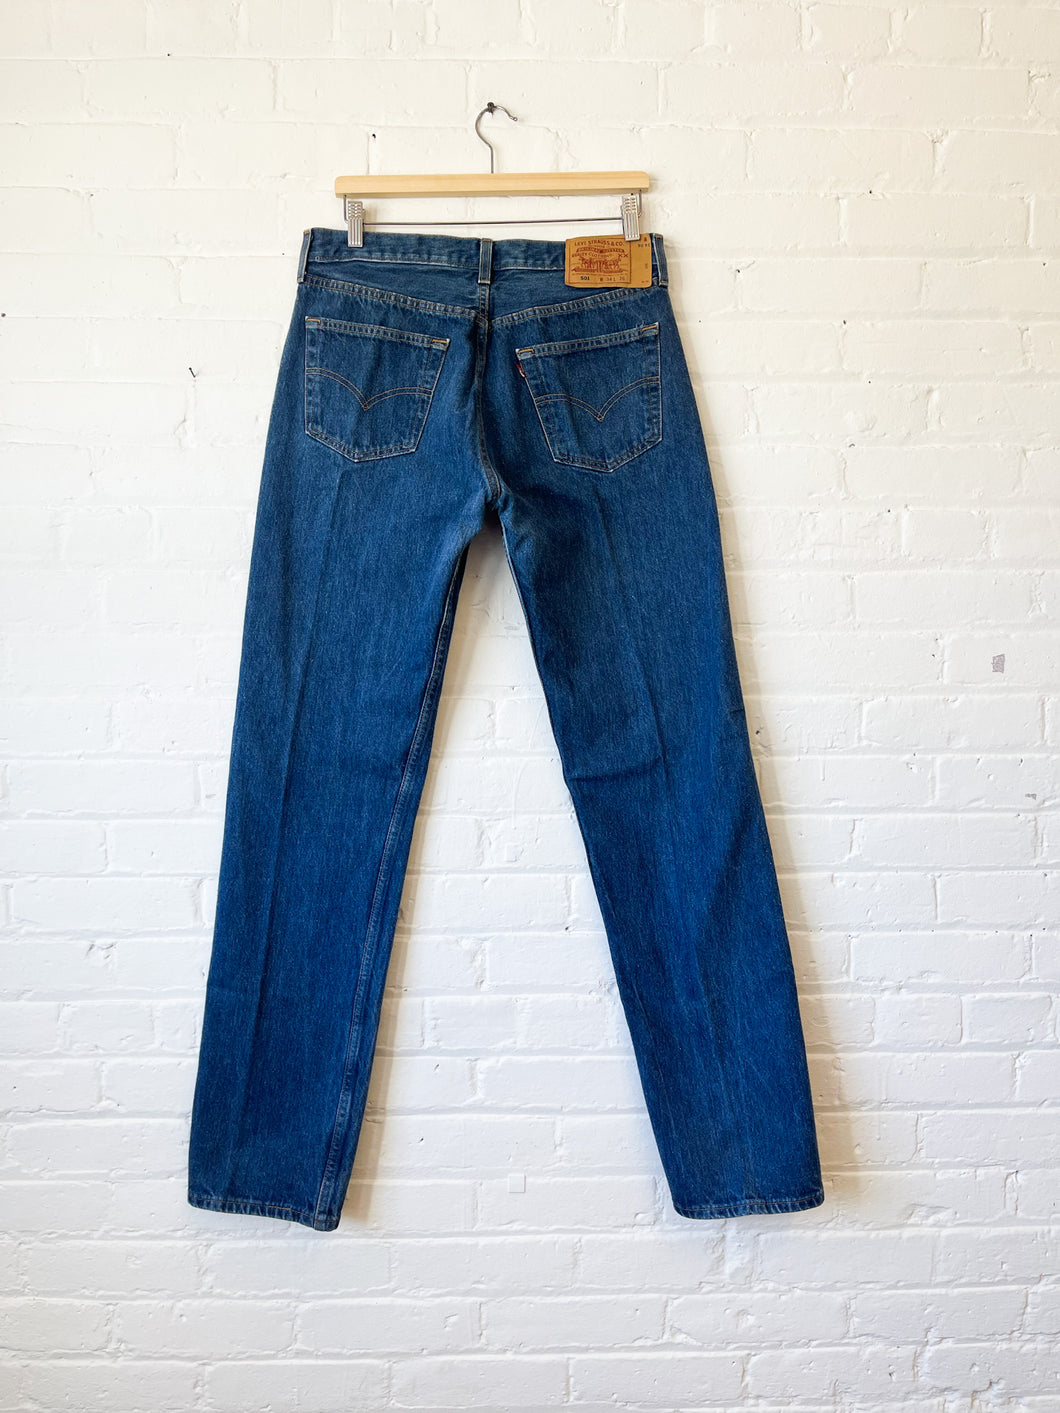 VINTAGE Levi's 501 Jeans - Select Your Size & Wash